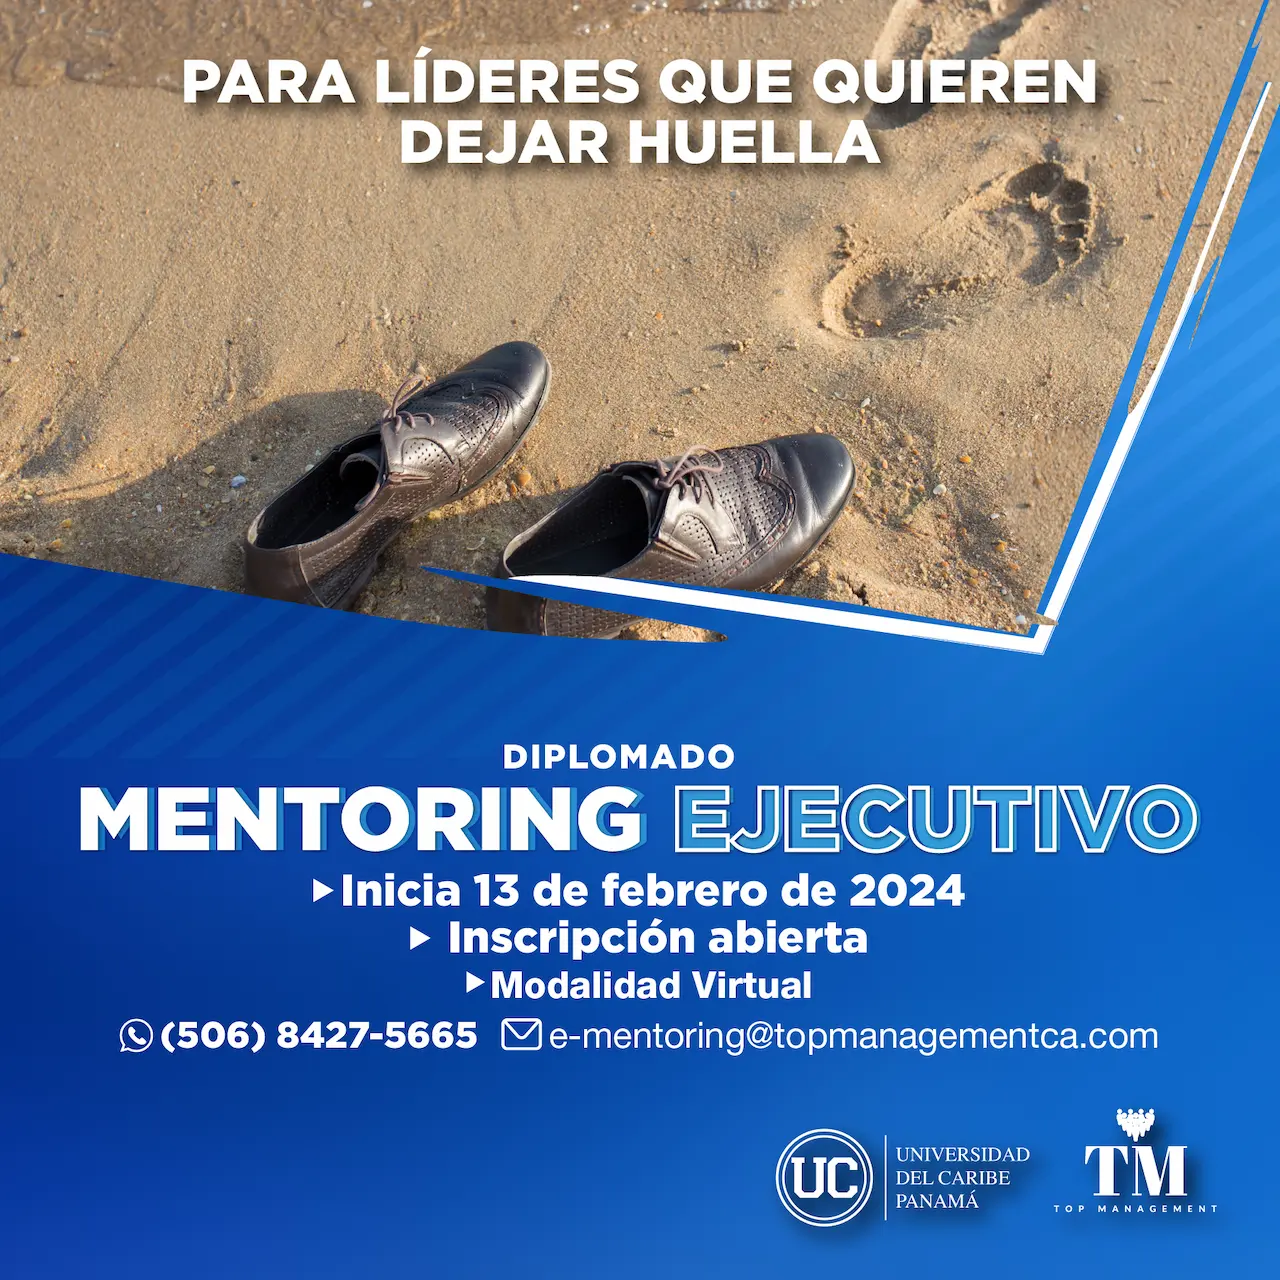 Diplomado MENTORING EJECUTIVO con titulación de la Universidad del Caribe, Panamá y Top Management